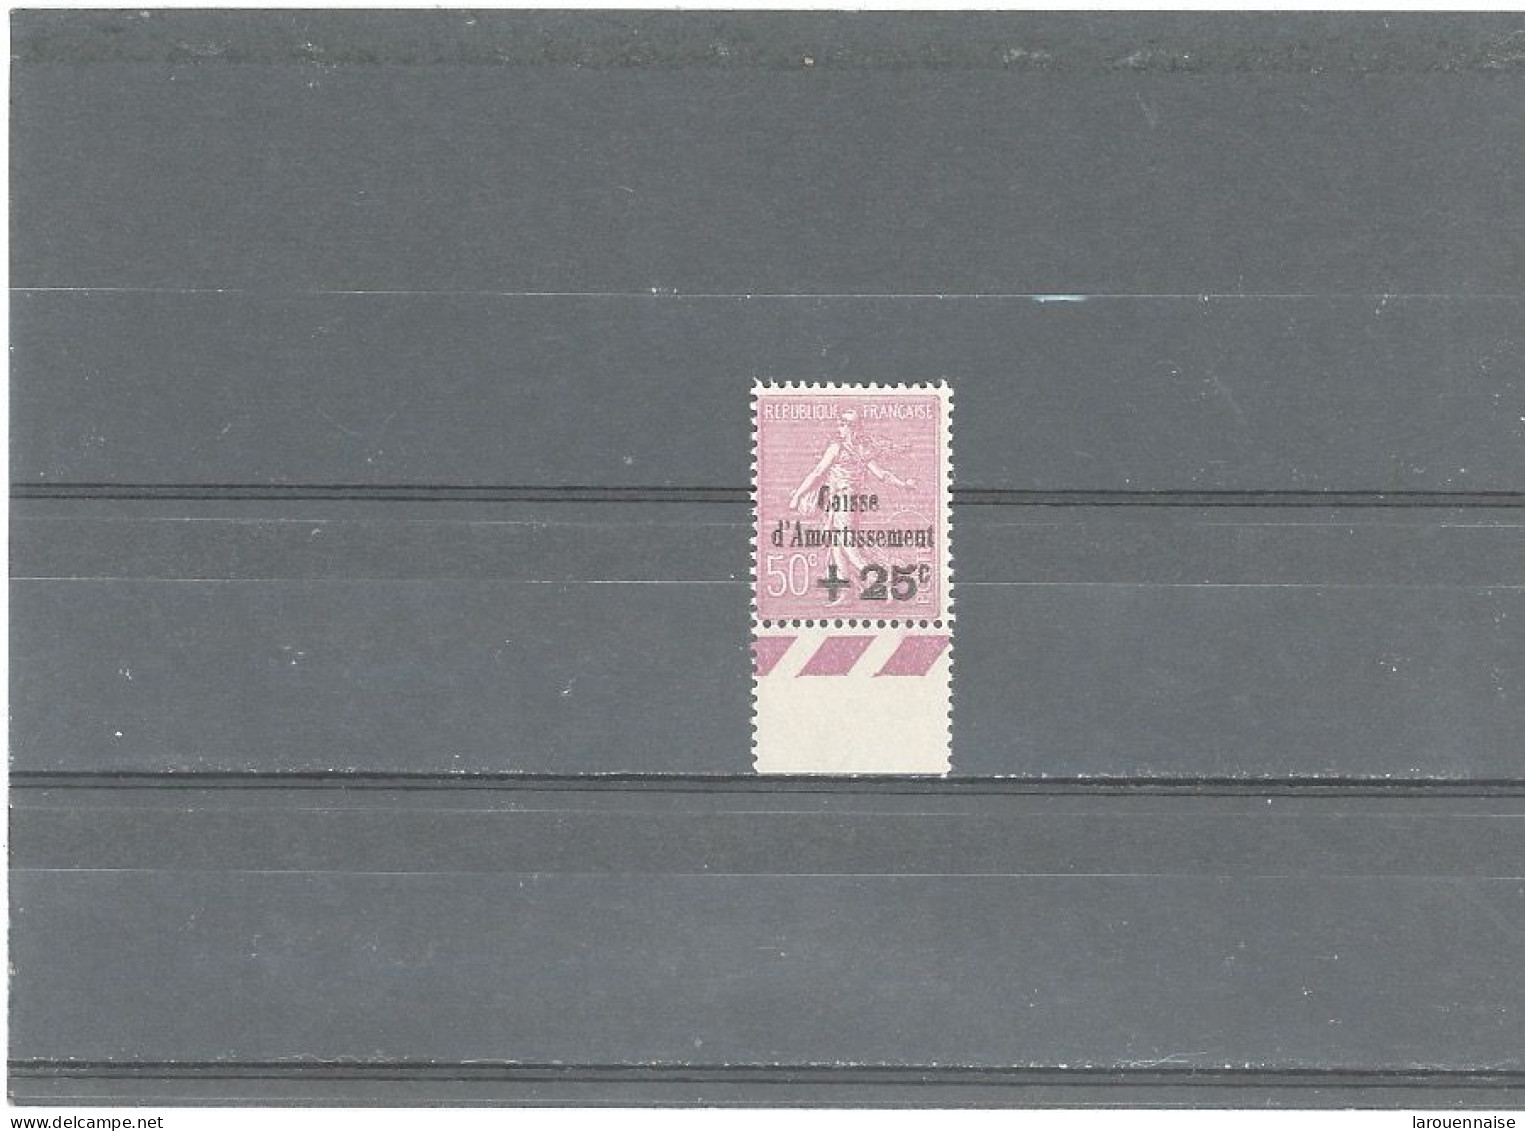 VARIÉTÉ -N°254a CAISSE D'AMORTISSEMENT -1929- SEMEUSE LIGNÉE + 25/ 50 ROSE LILAS N**-SANS POINT SUR LE I D'AMORTISSEMENT - Unused Stamps